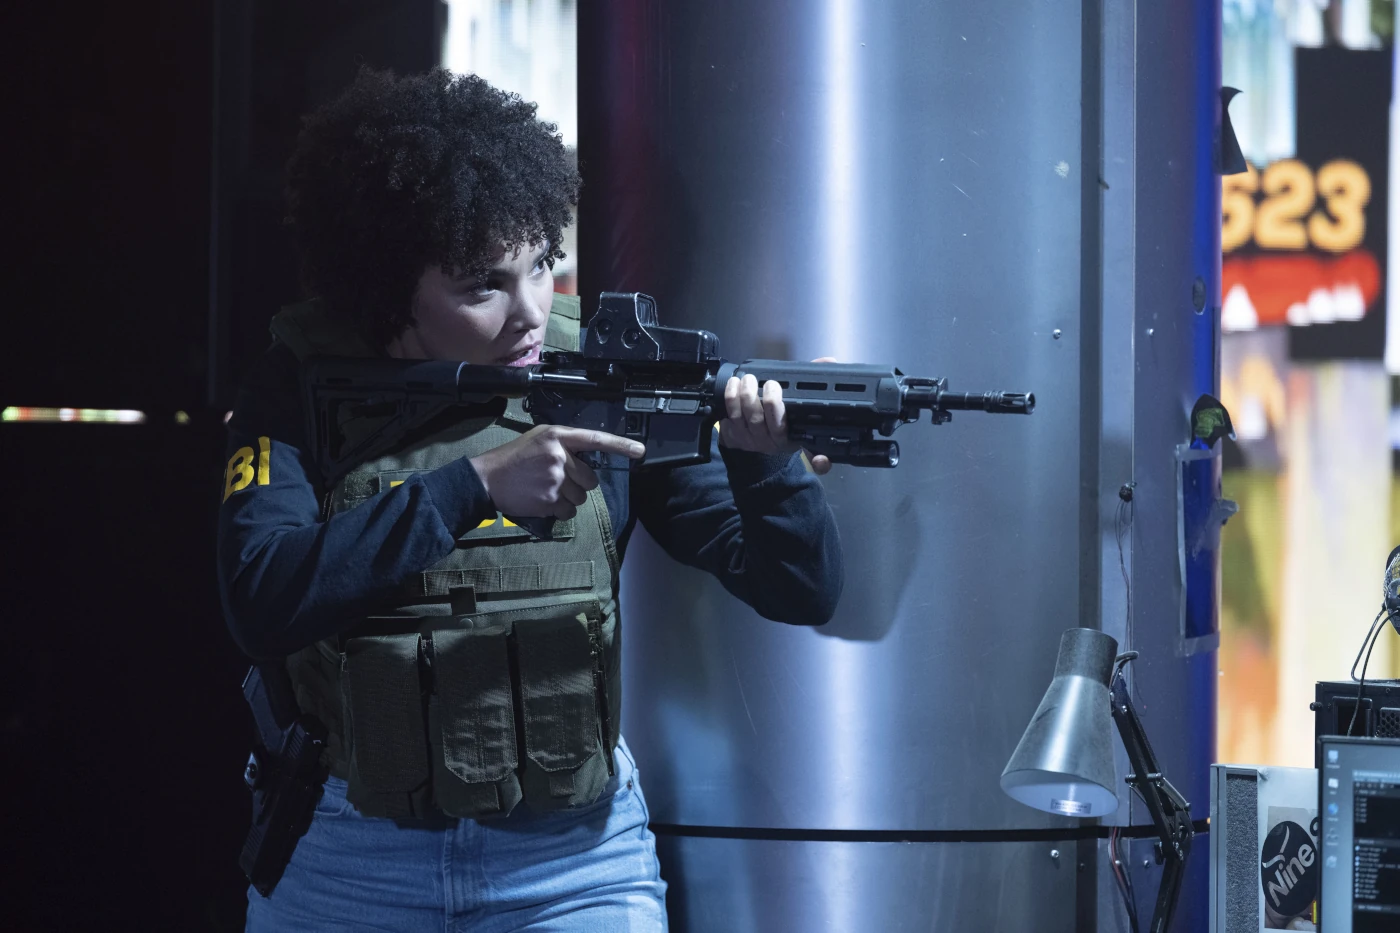 eine bewaffnete Frau mit Warnweste und Maschinengewehr richtet ihre Waffe auf ein Ziel außerhalb des Bildes